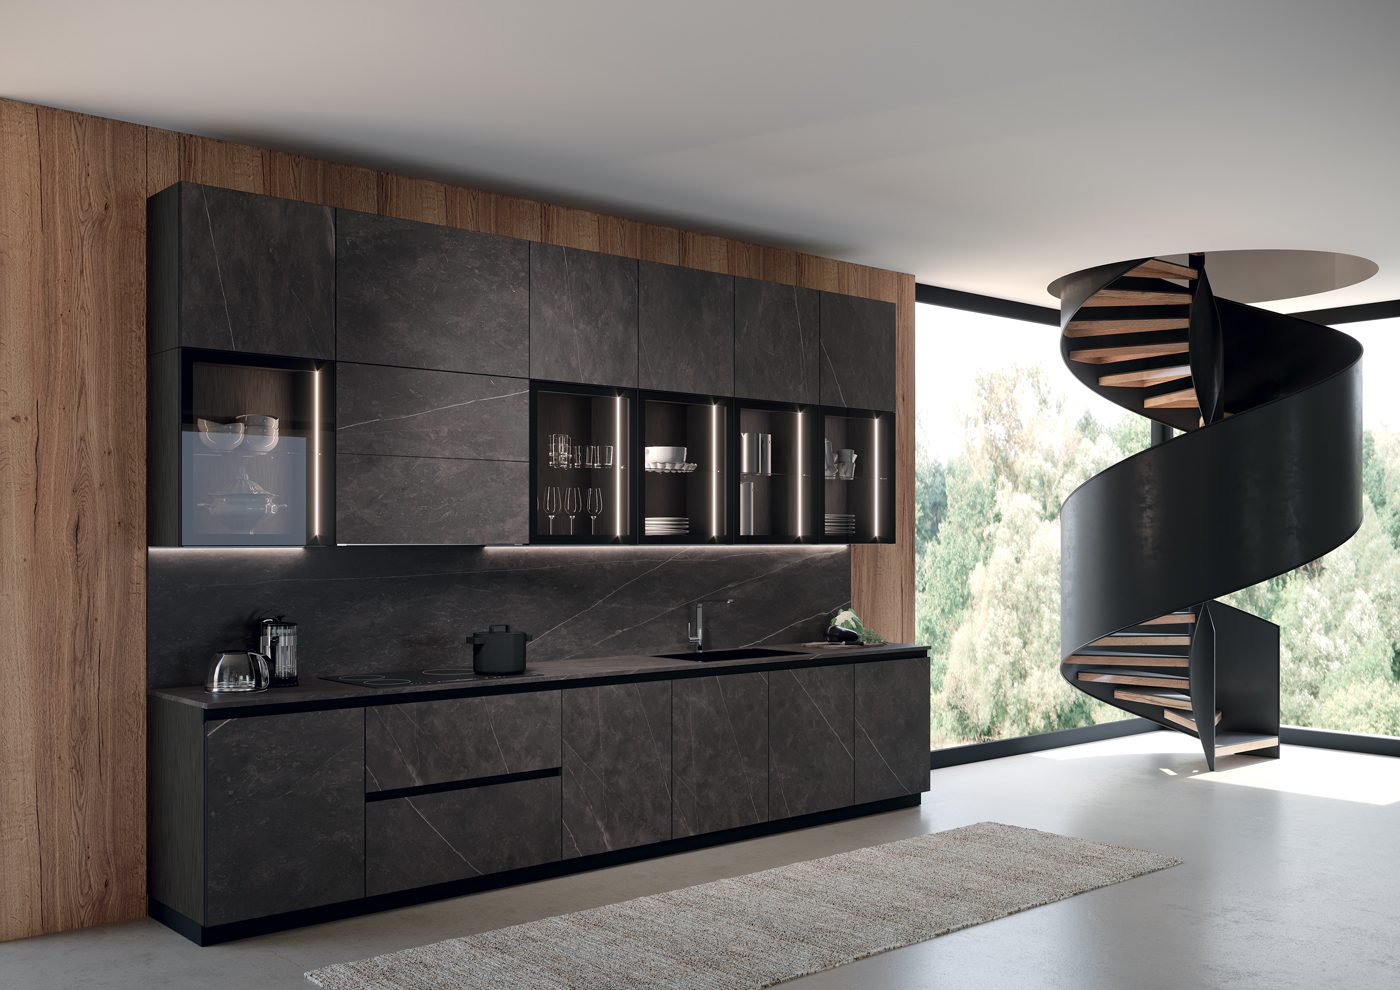 Febal Casa cucina moderna Kaleidos nera con sportelli vetro 042 043